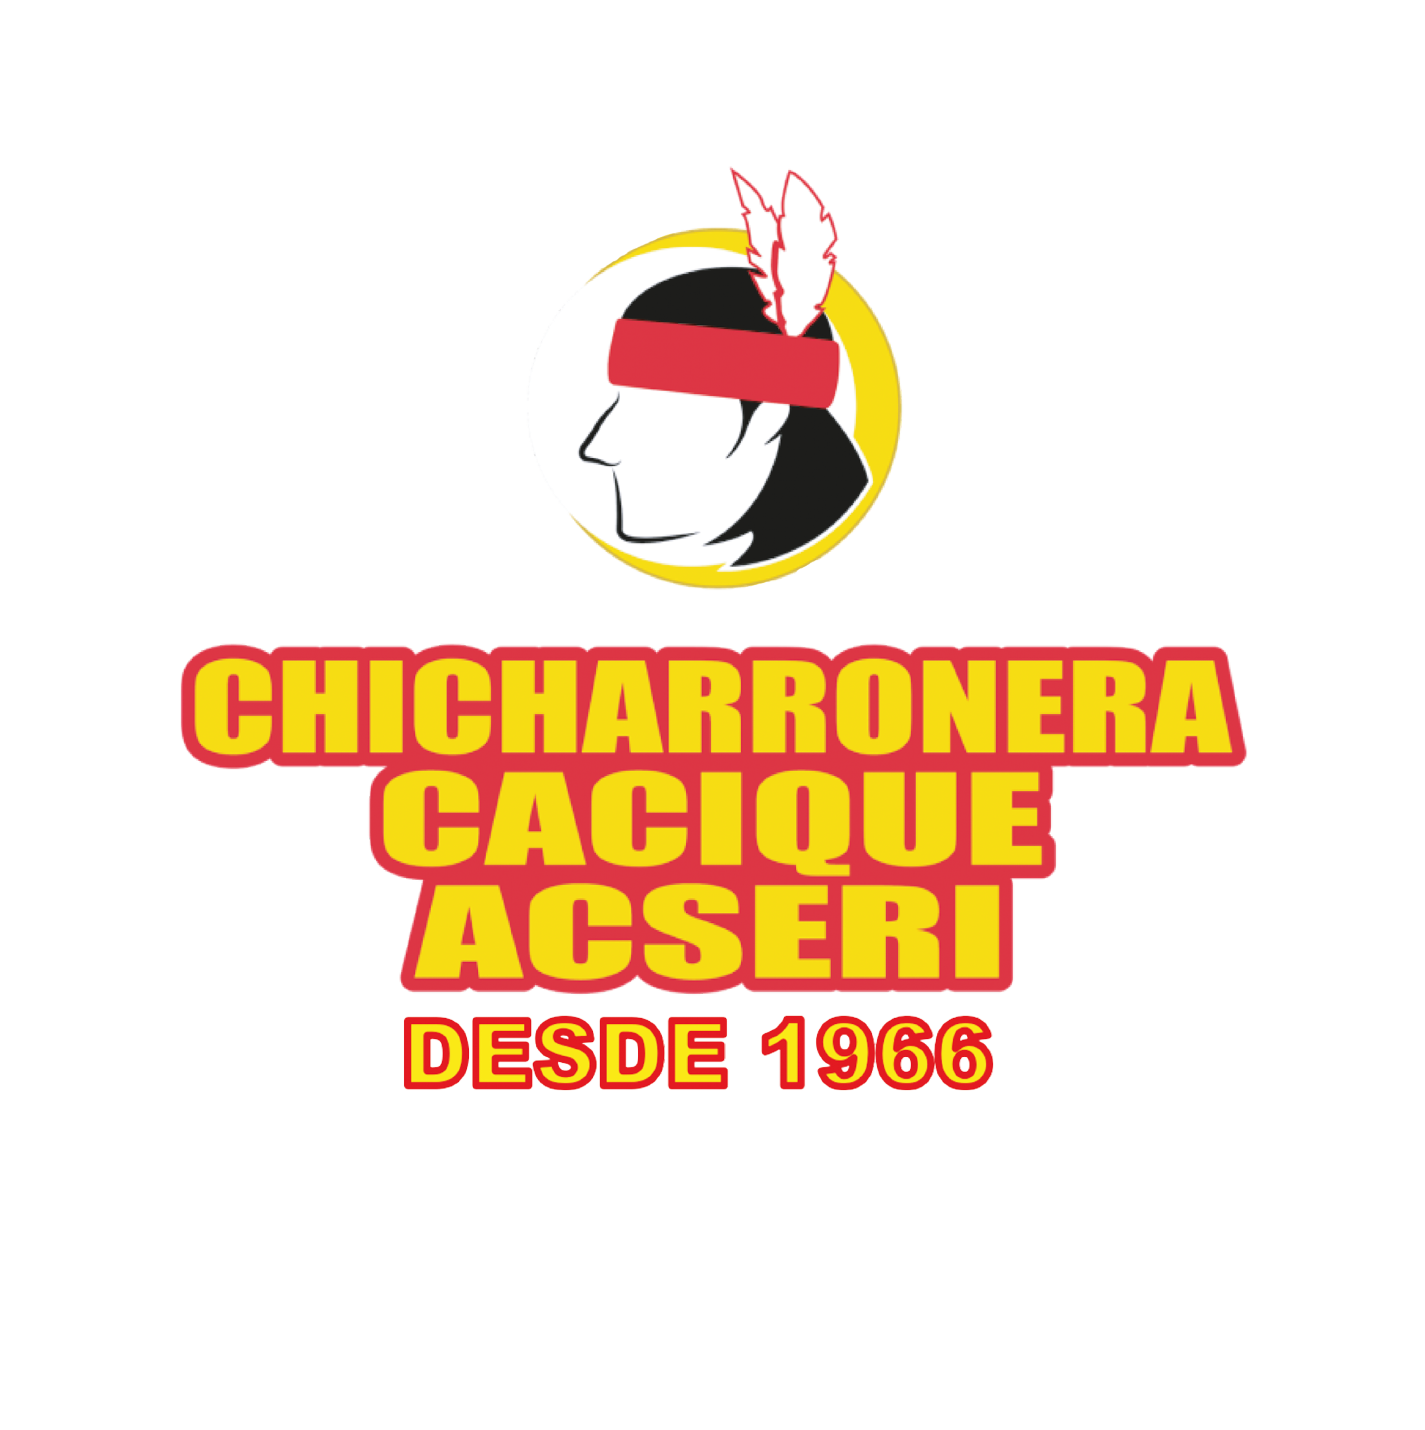 Chicharronera Cacique Acseri